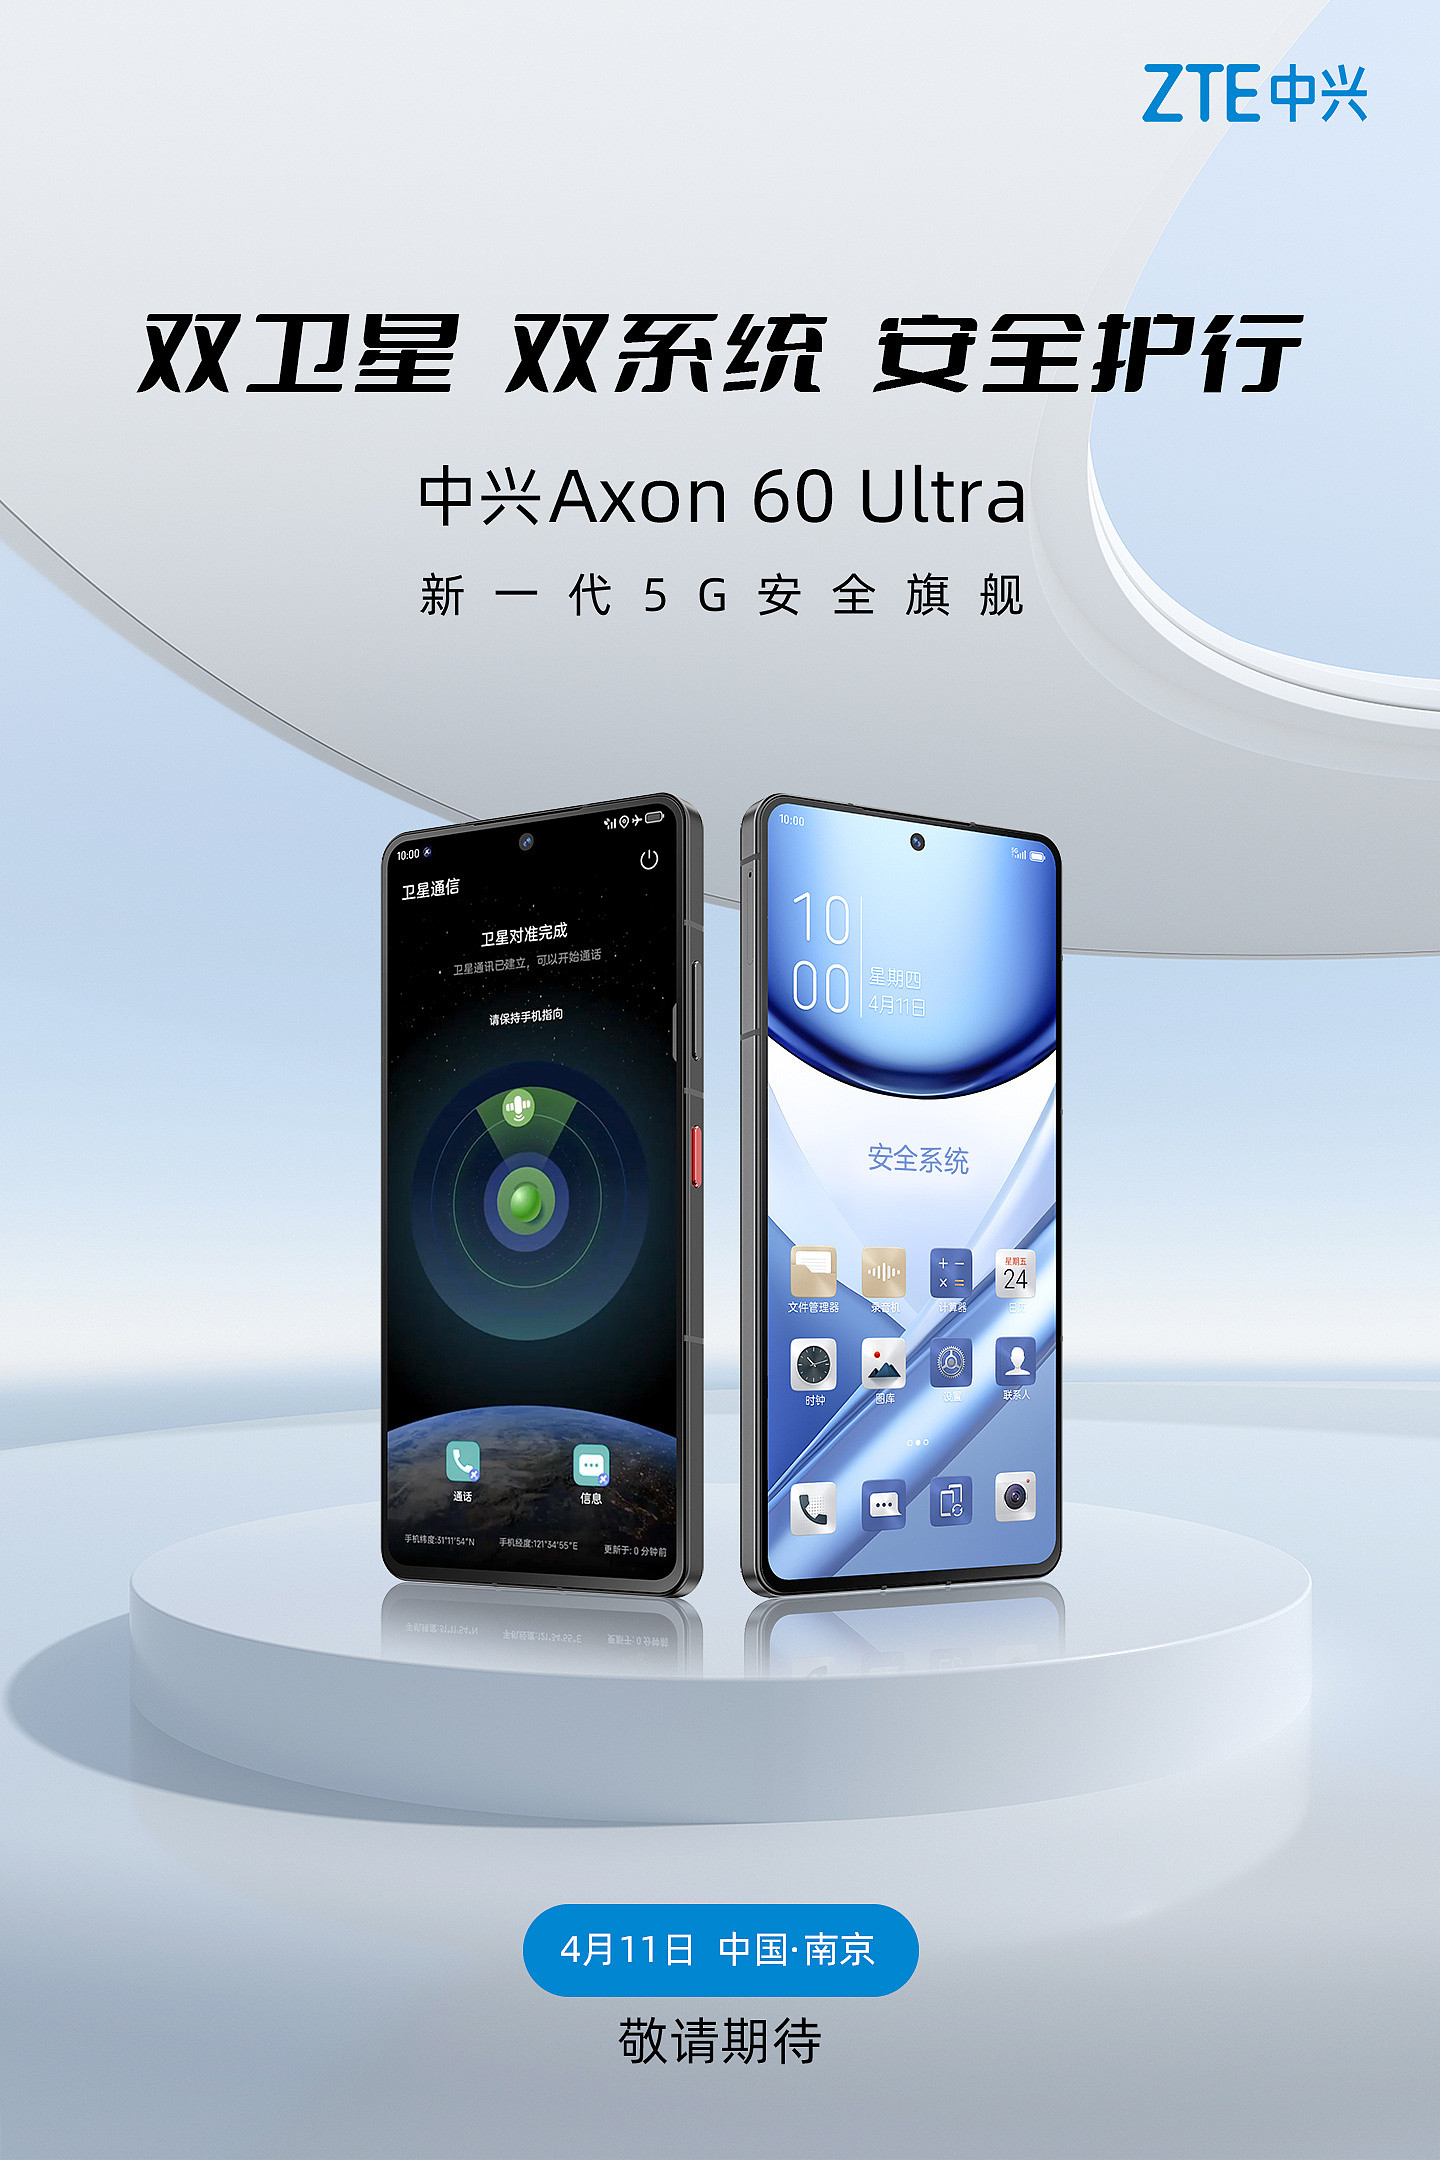 中兴 Axon 60 Ultra 手机官宣 4 月 11 日发布，支持双卫星、双系统 - 1